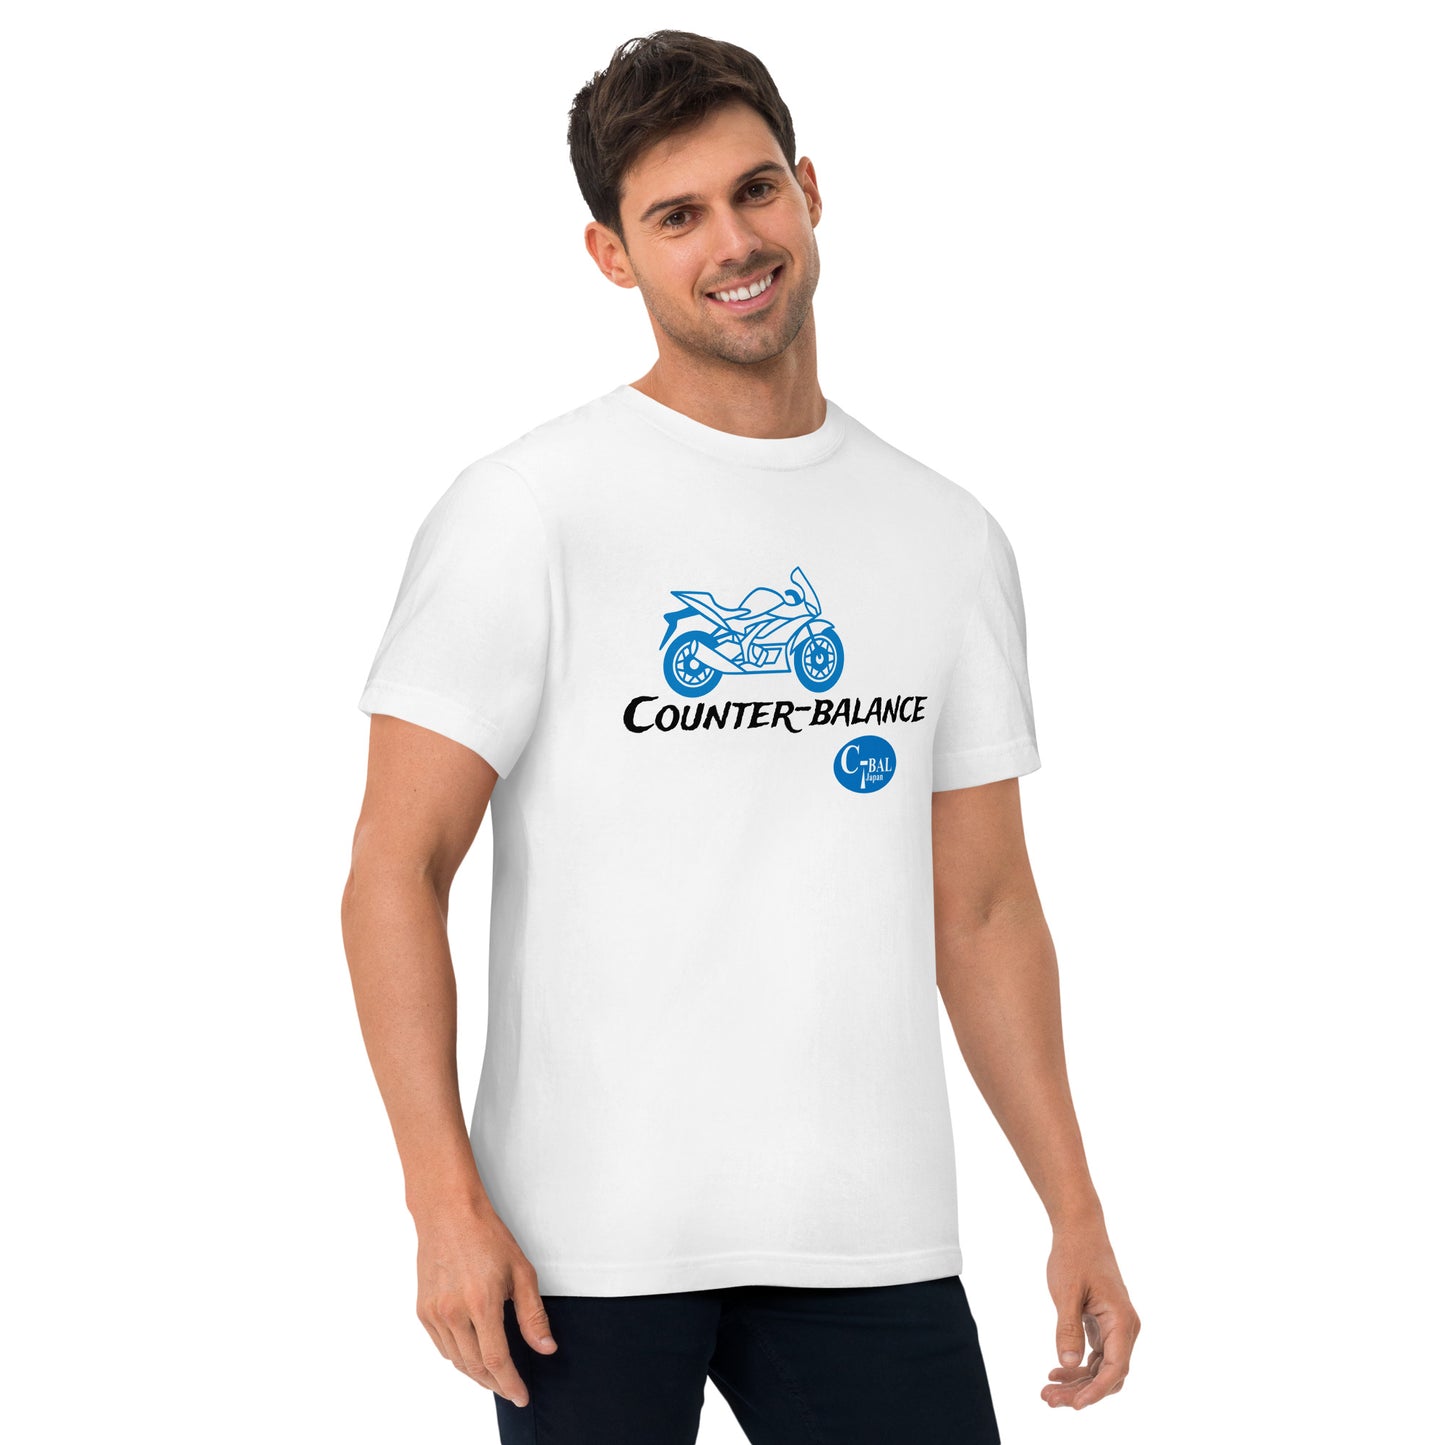 D000 - T-shirt kapas berkualiti tinggi (MC Super Sports: Putih/Biru)